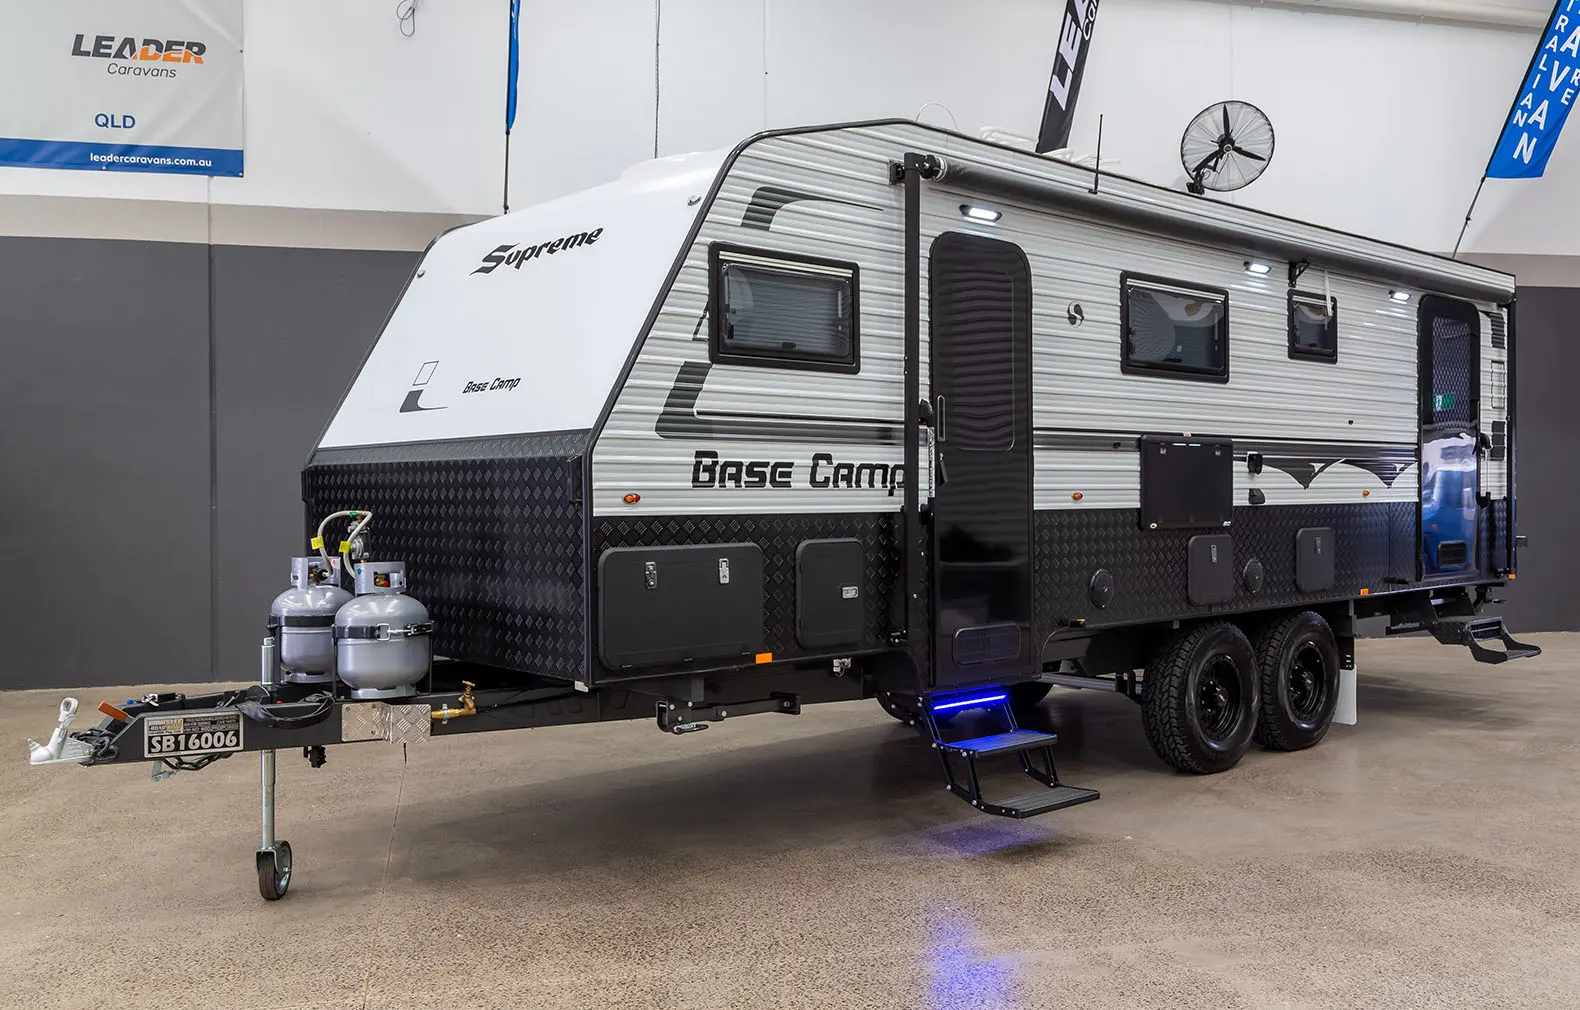 supreme base camp caravans for sale Melbourne